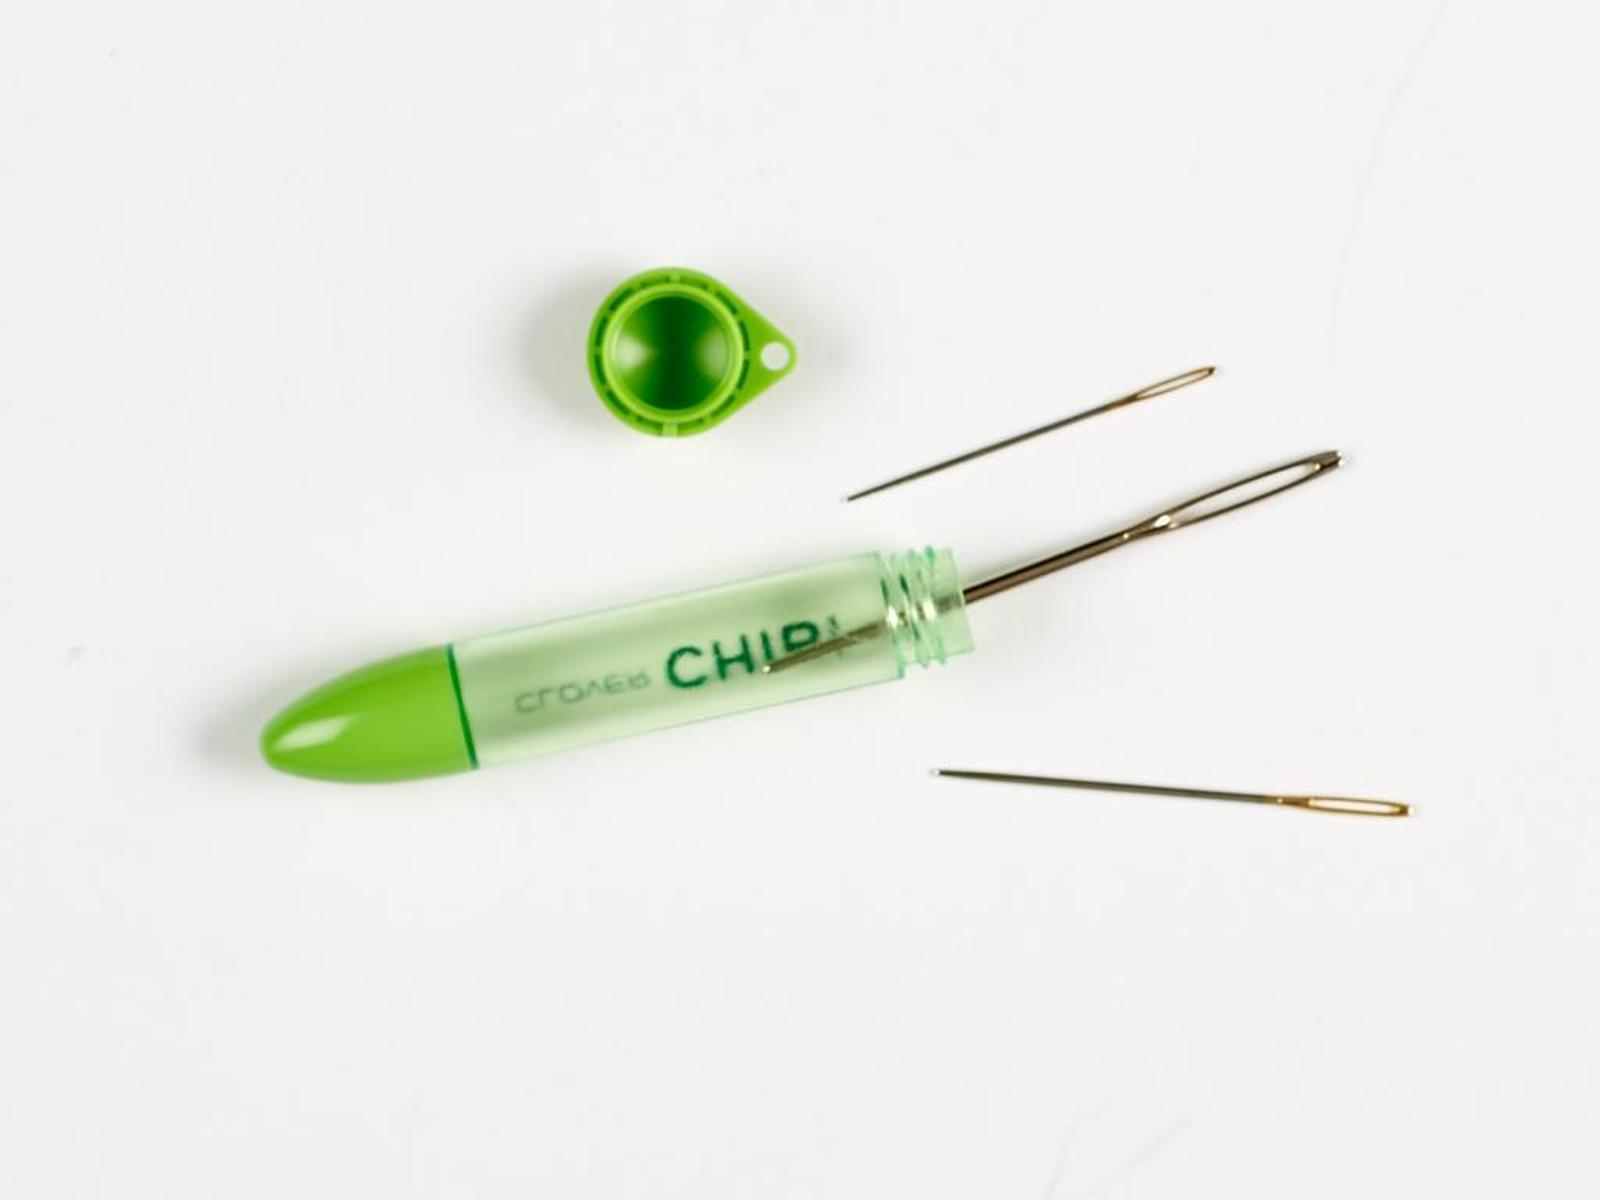 Clover Chibi Darning Needles